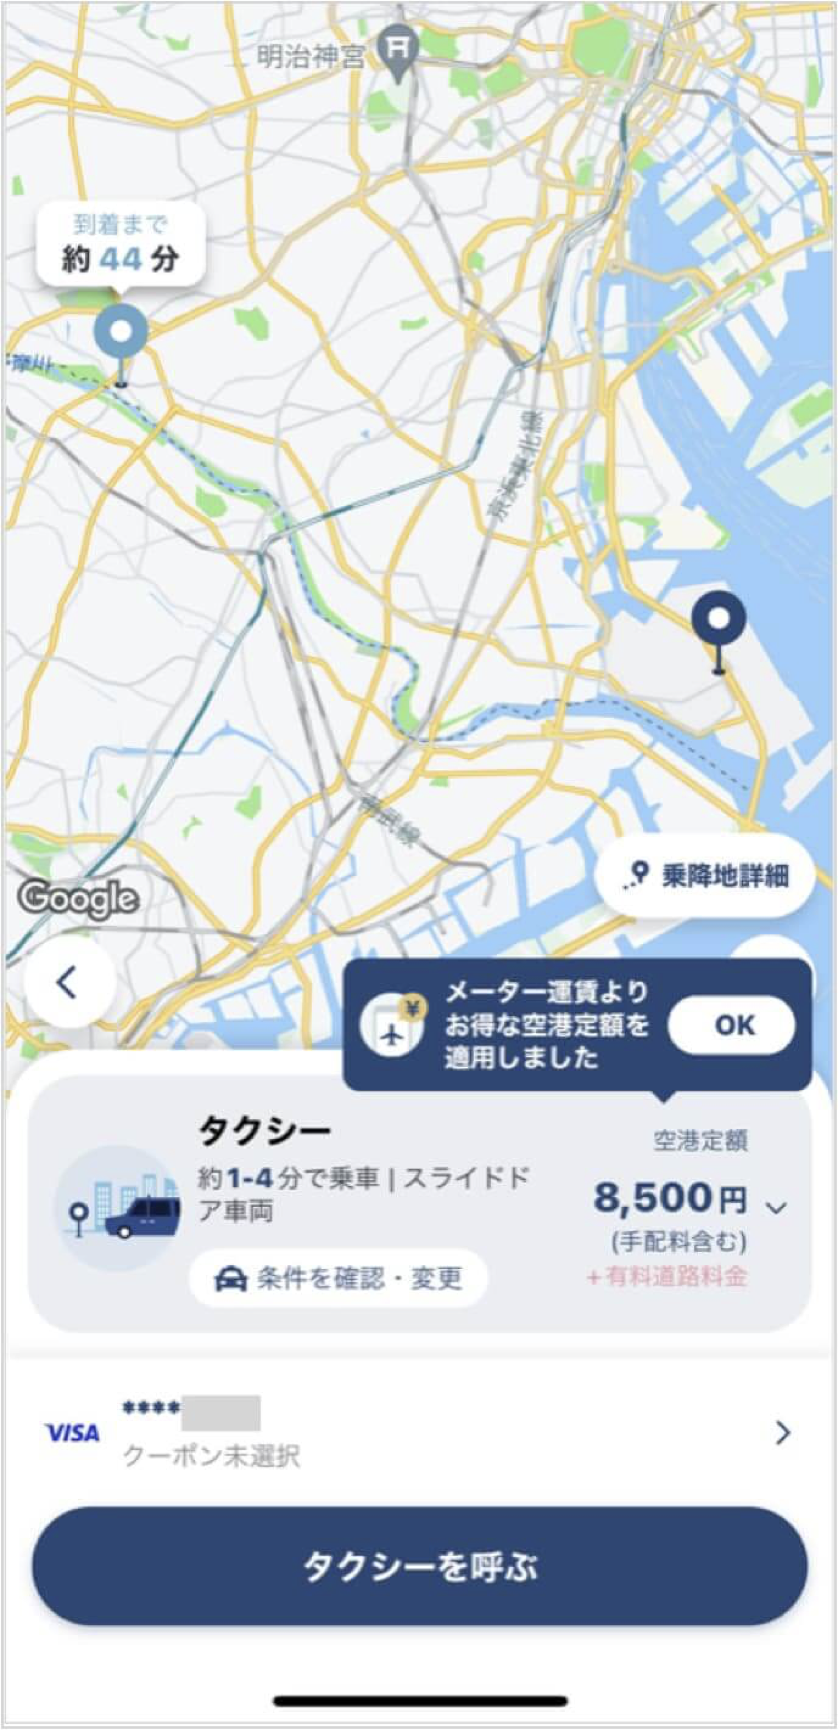 羽田空港から水道橋までのタクシー料金・所要時間まとめ